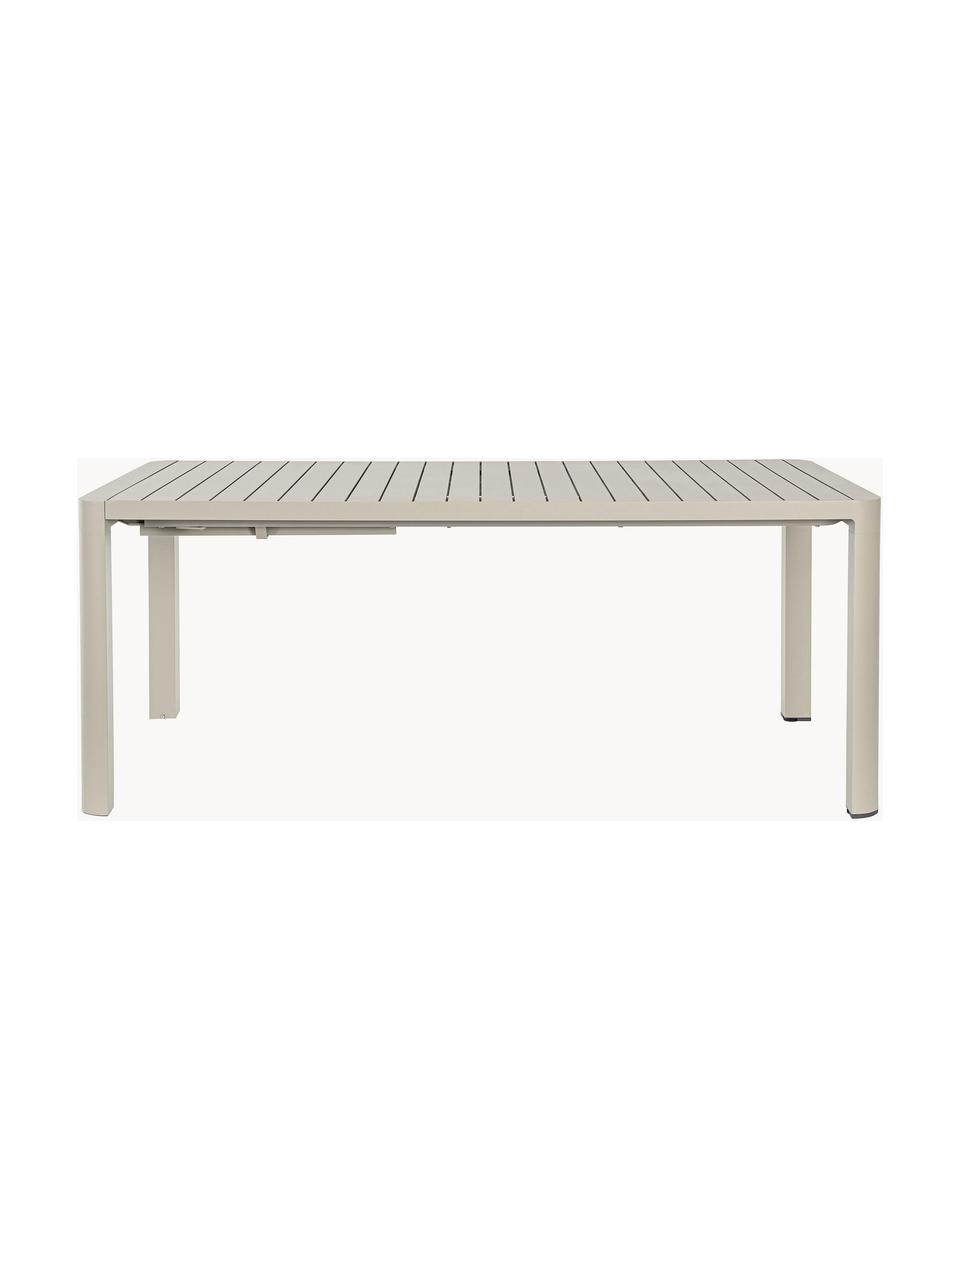 Mesa extensible para exterior Kiplin, 180-240 x 100 cm, Aluminio con pintura en polvo, Beige claro, An 180-240 x F 100 cm